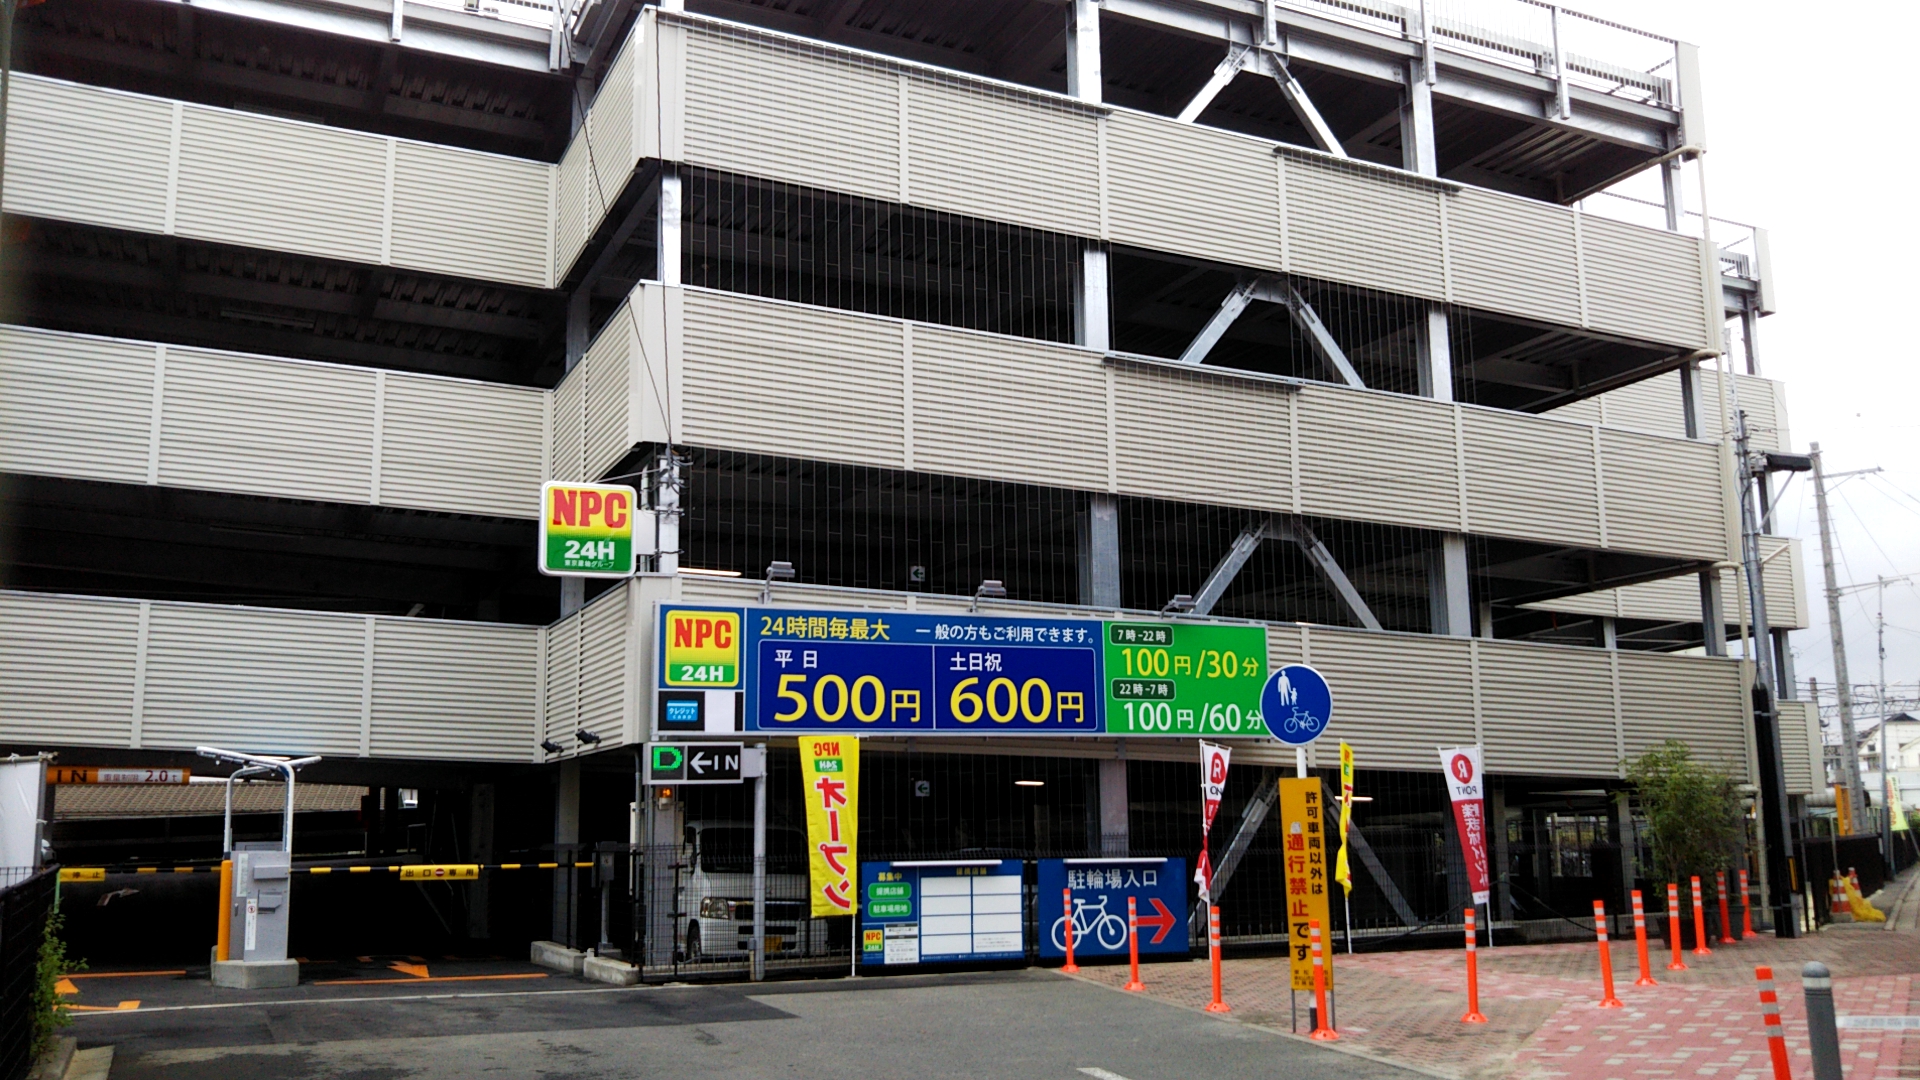 東松山 駅前開発進行中 其の4 株式会社住まいる館